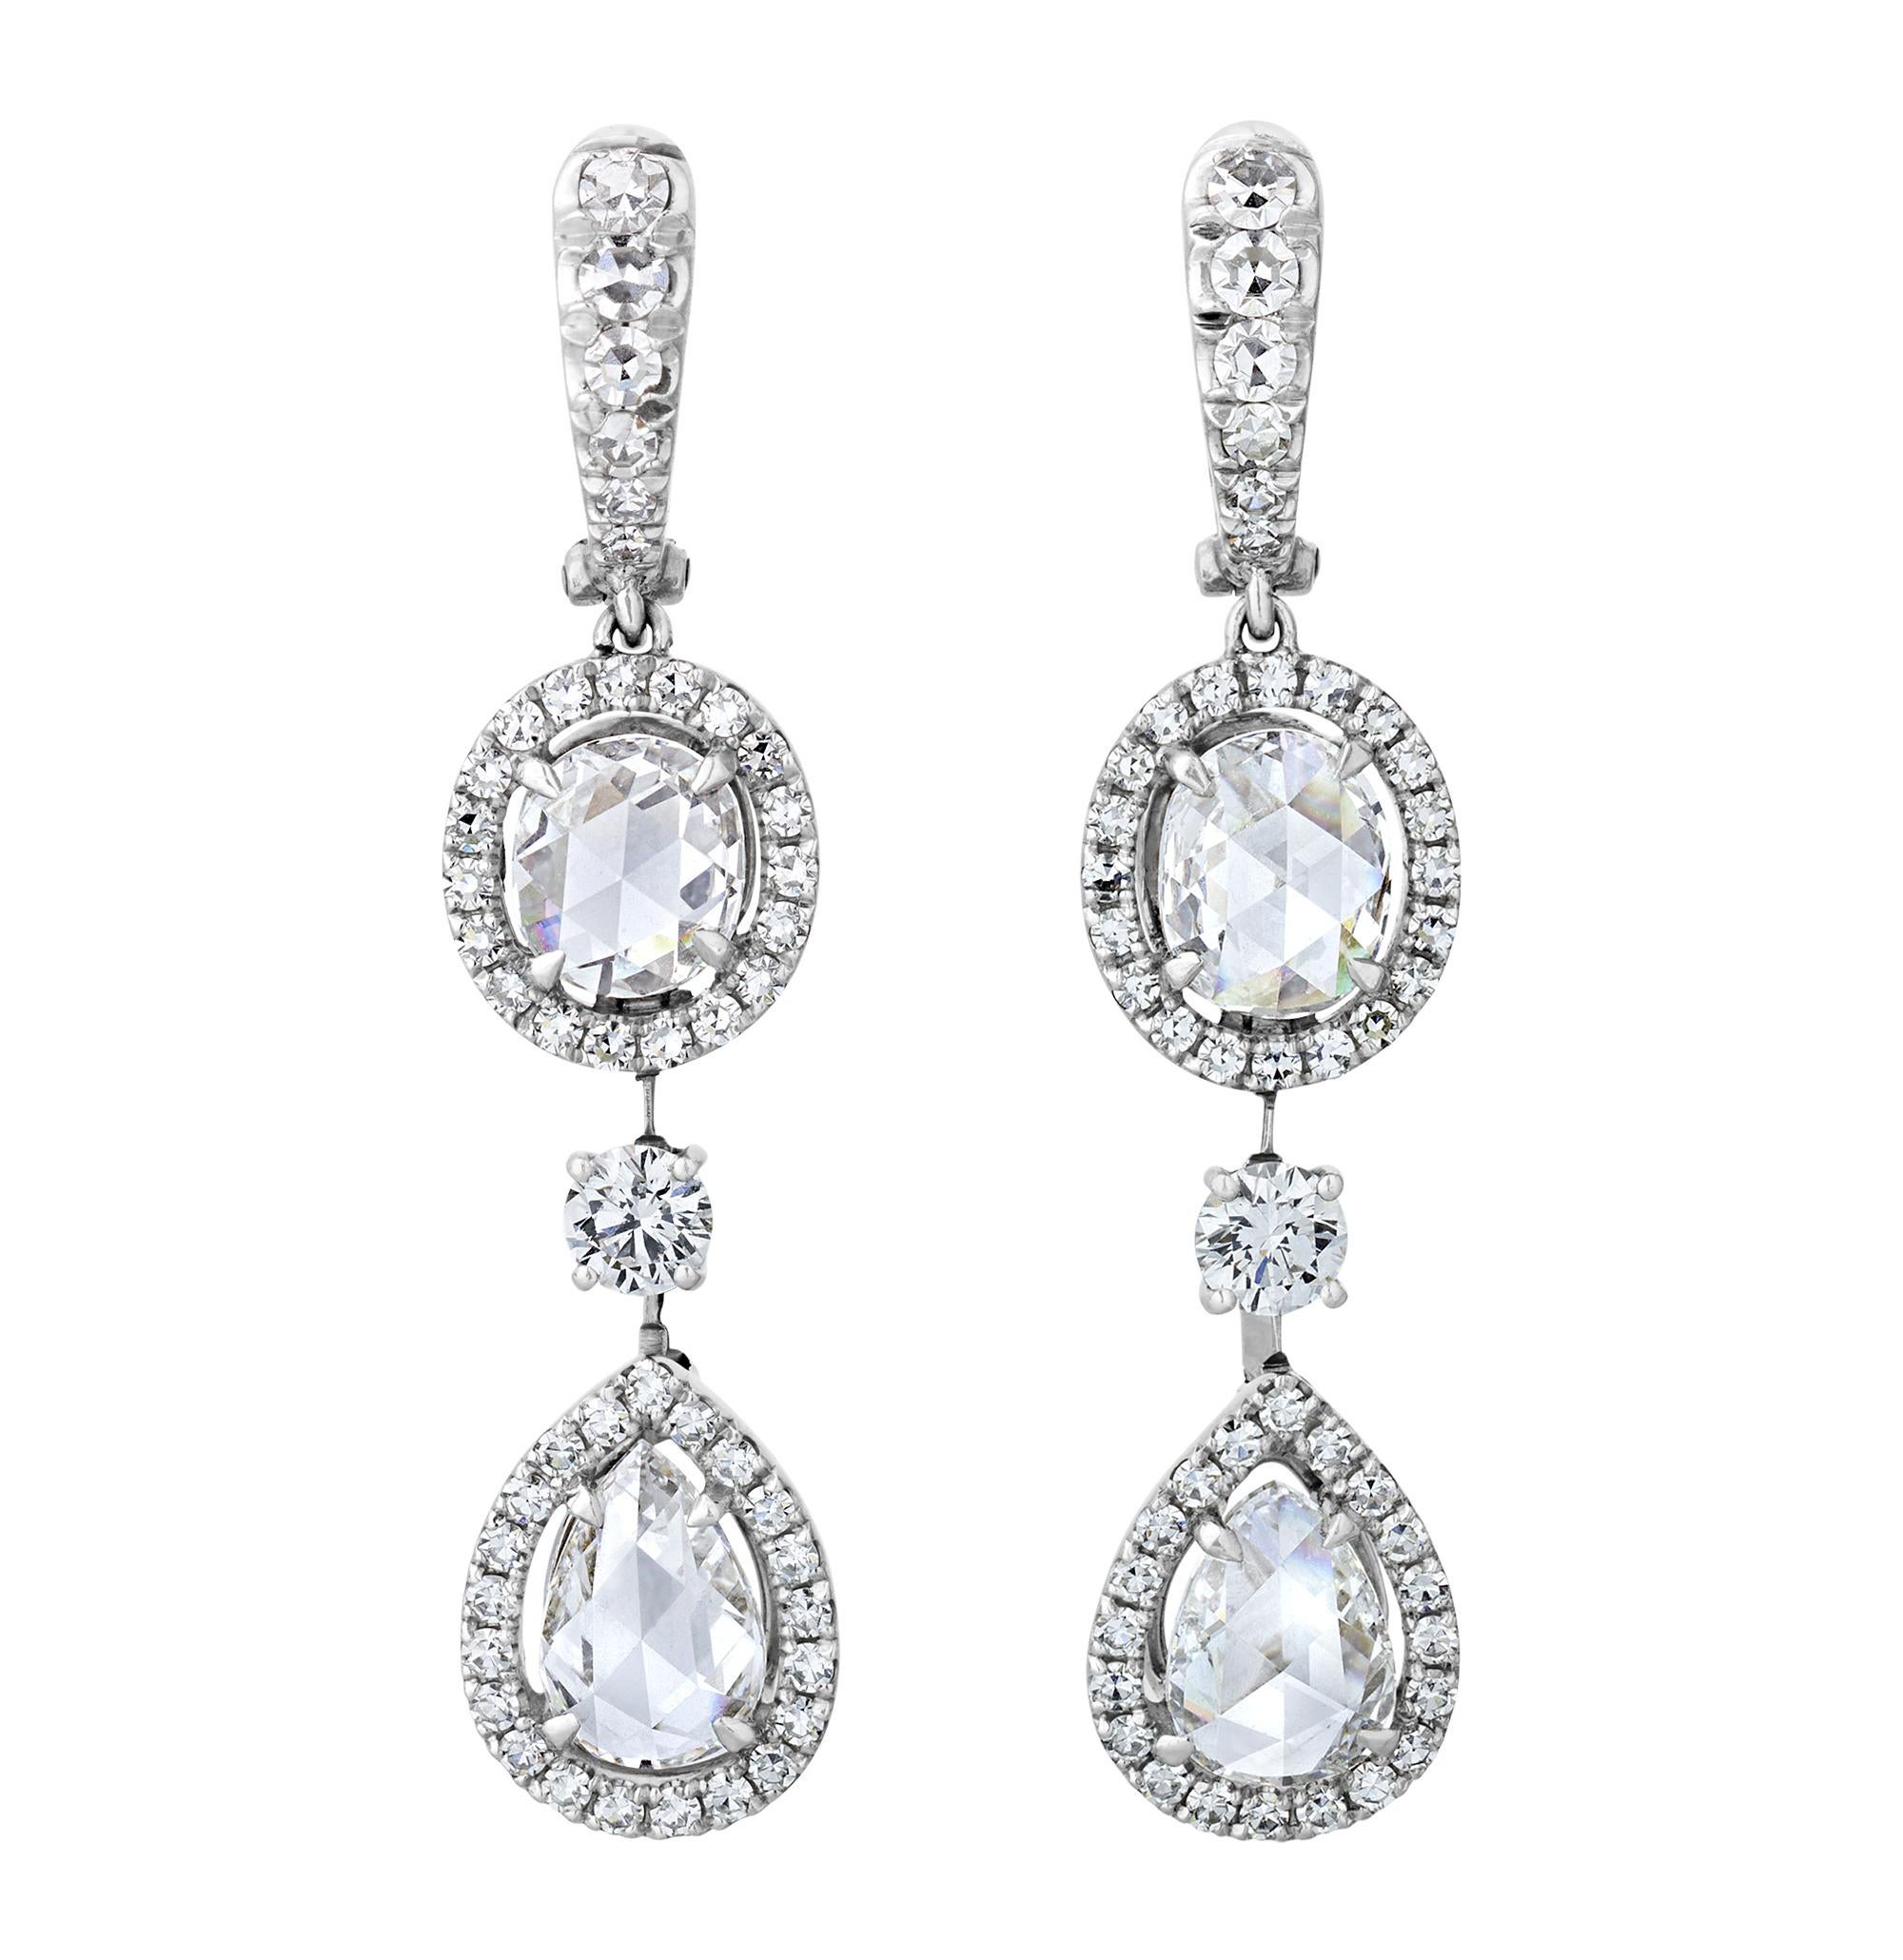 Dieses exquisite Set aus Diamant-Halskette und Ohrringen besteht aus 42,11 Karat Diamanten im Rosenschliff, ergänzt durch 19,17 Karat runde Diamanten im Brillantschliff. In ihrem Design erinnern sie an große viktorianische Meisterwerke und